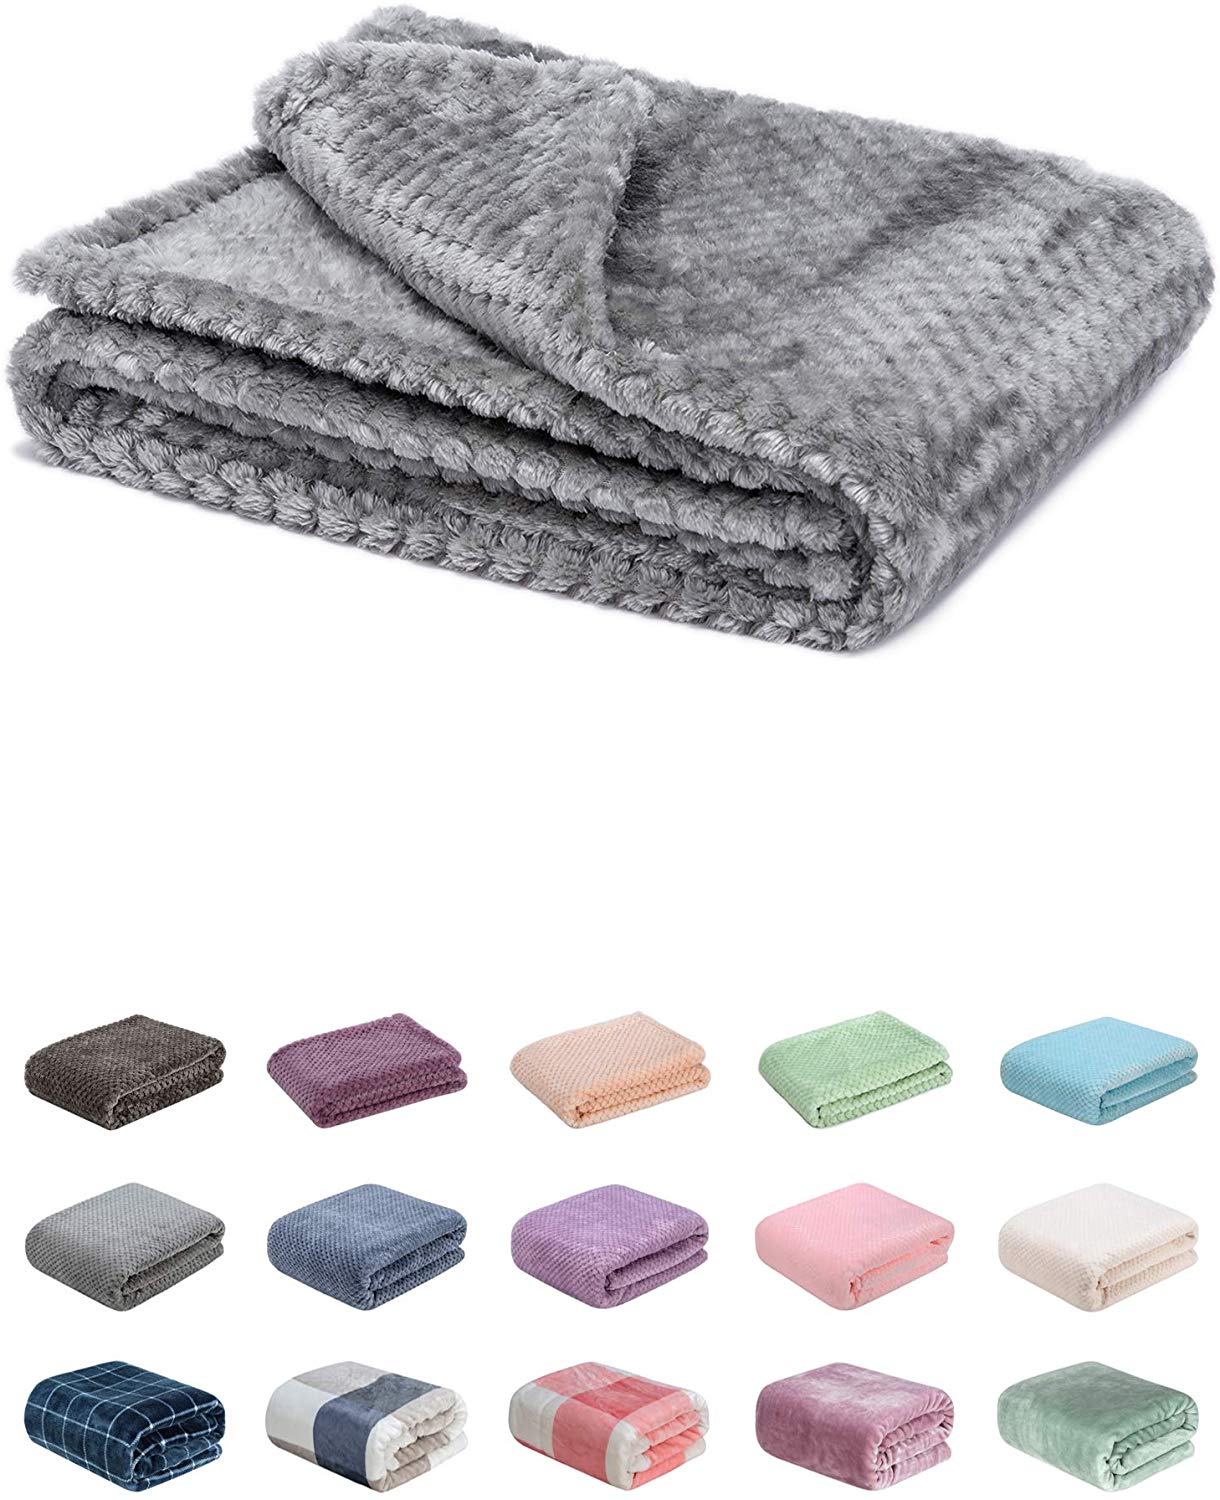 Kids Blanket Children/Baby Throw Soft Fleece Blanket Cot Throw/Blanket 110X140cm 